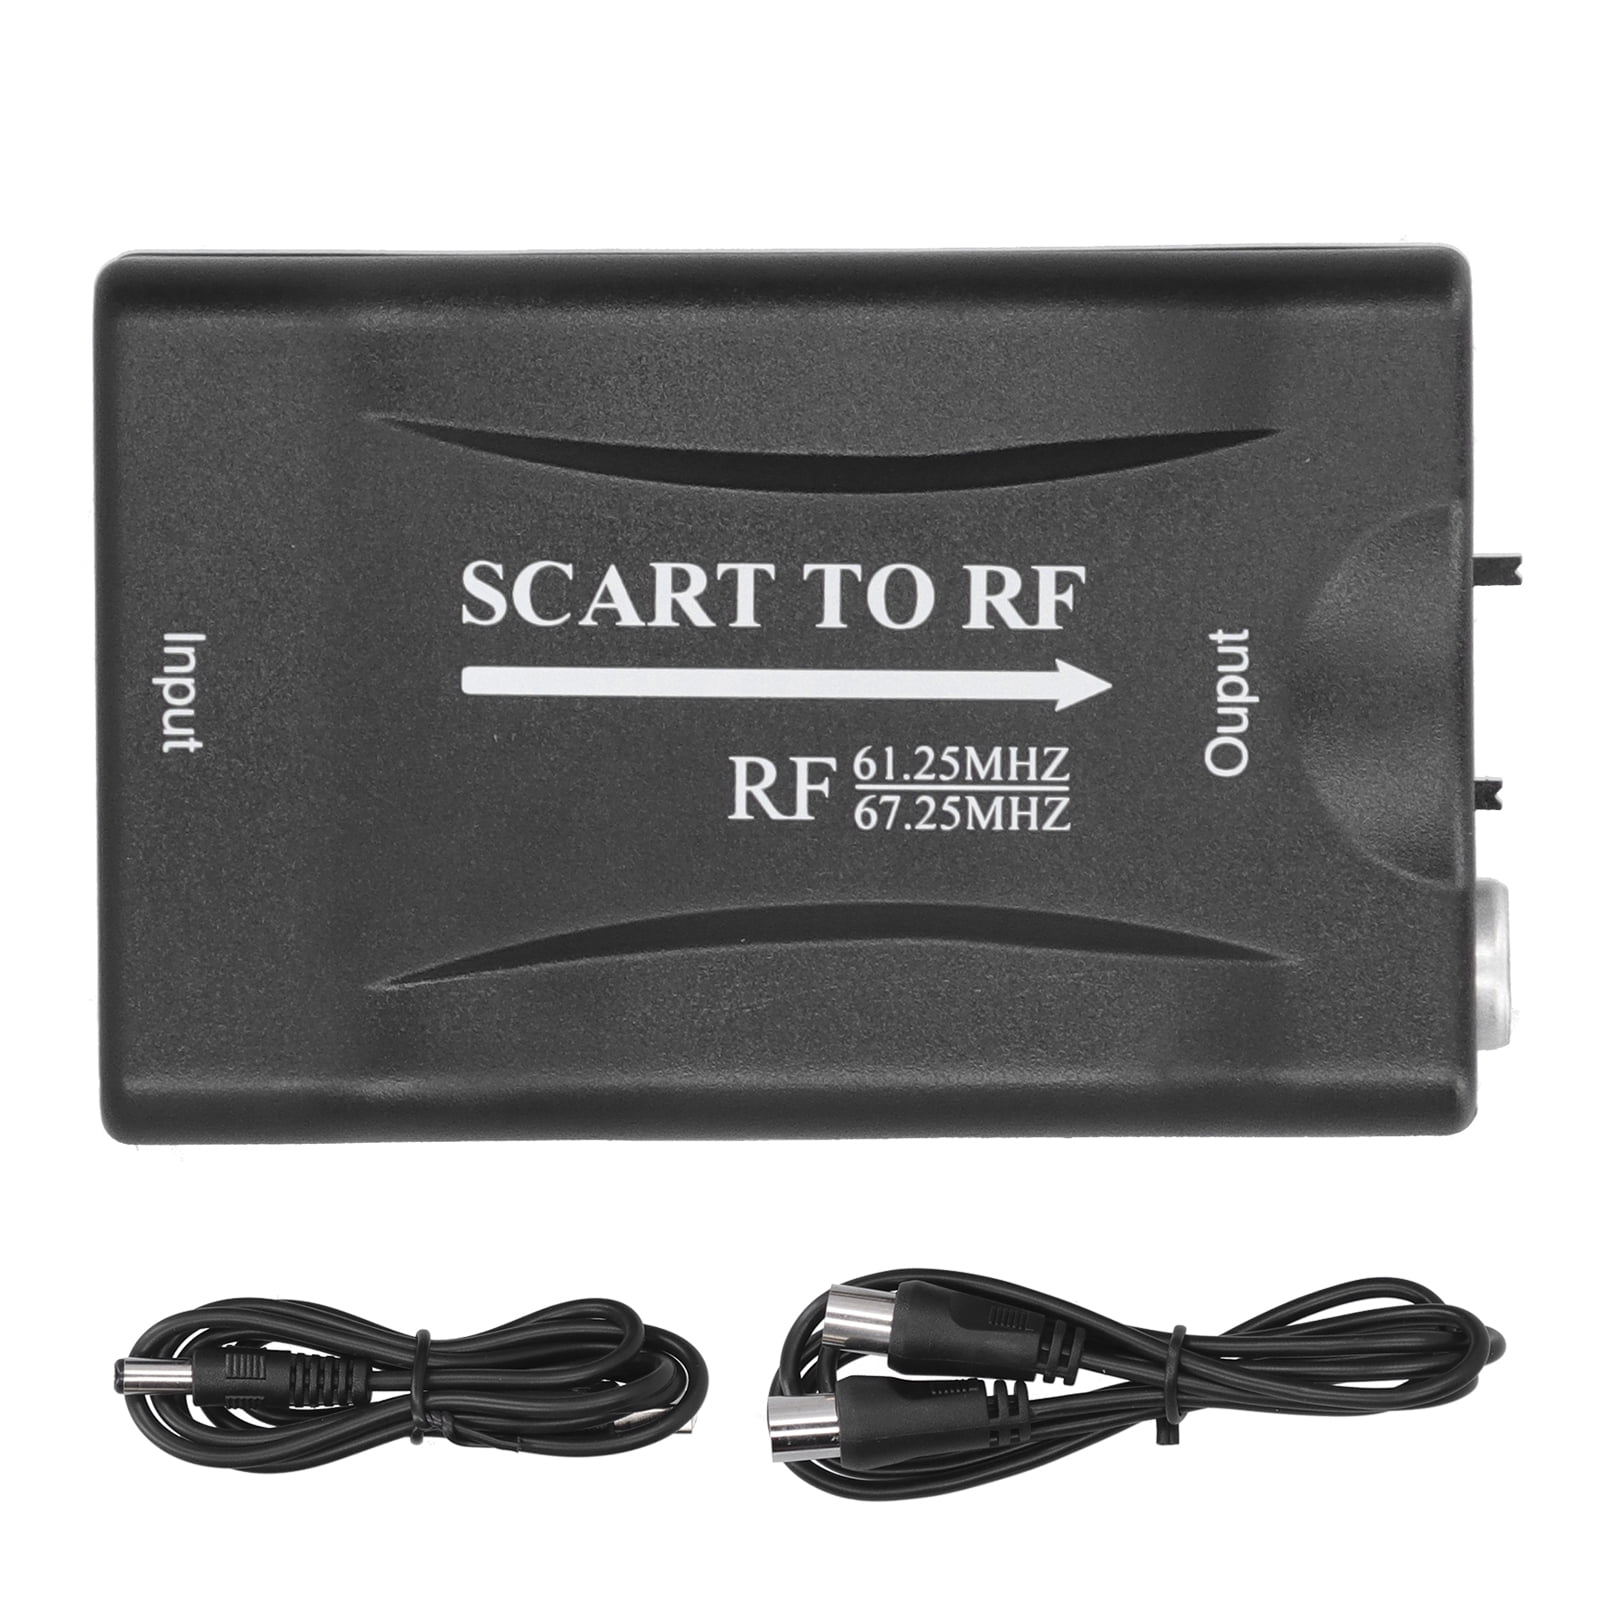 Scart zu RF Video Audio TV HDTV Adapter Konverter 67,25 MHz/61,25 MHz Mit Kabel